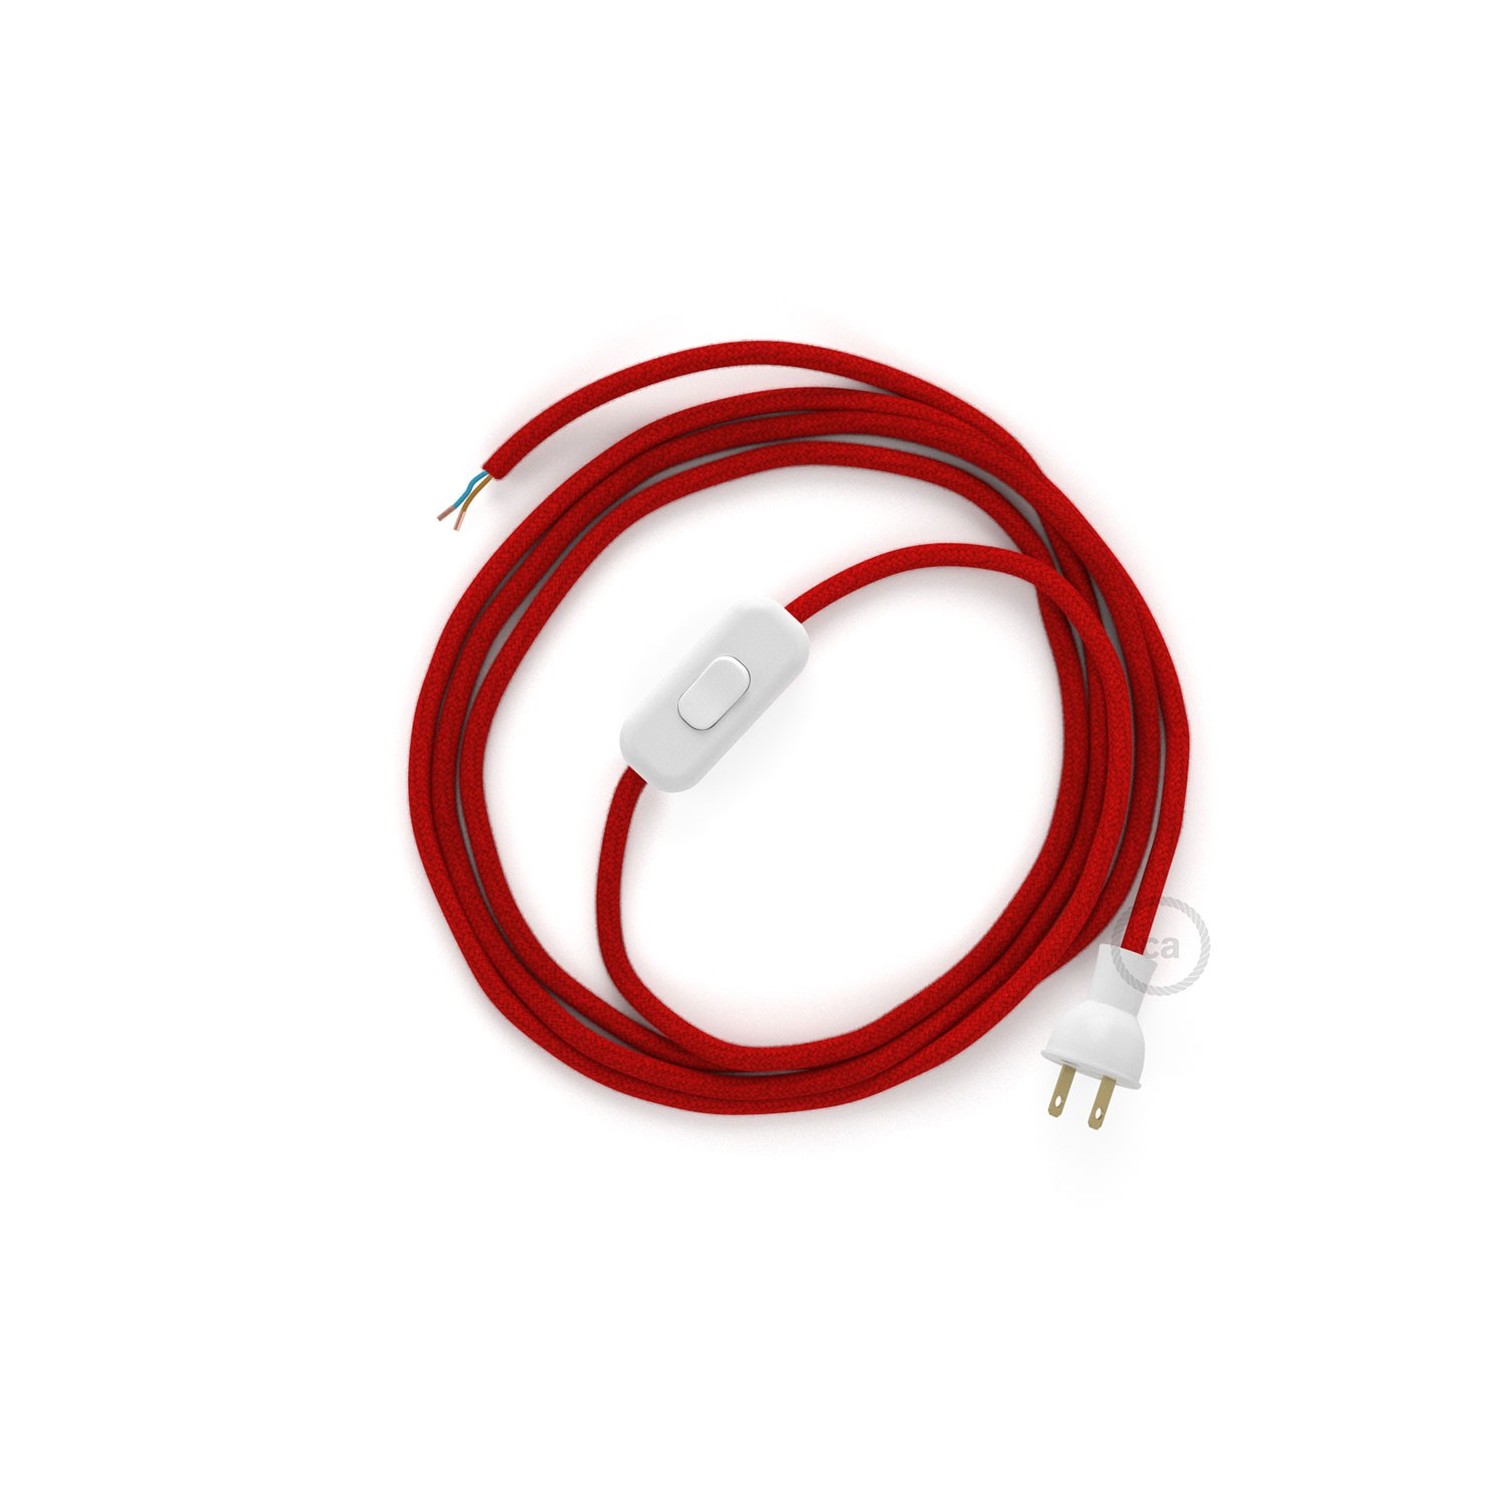 Cableado para lámpara de mesa, cable RC35 Algodón Rojo Fuego 1,8 m. Elige el color de la clavija y del interruptor!